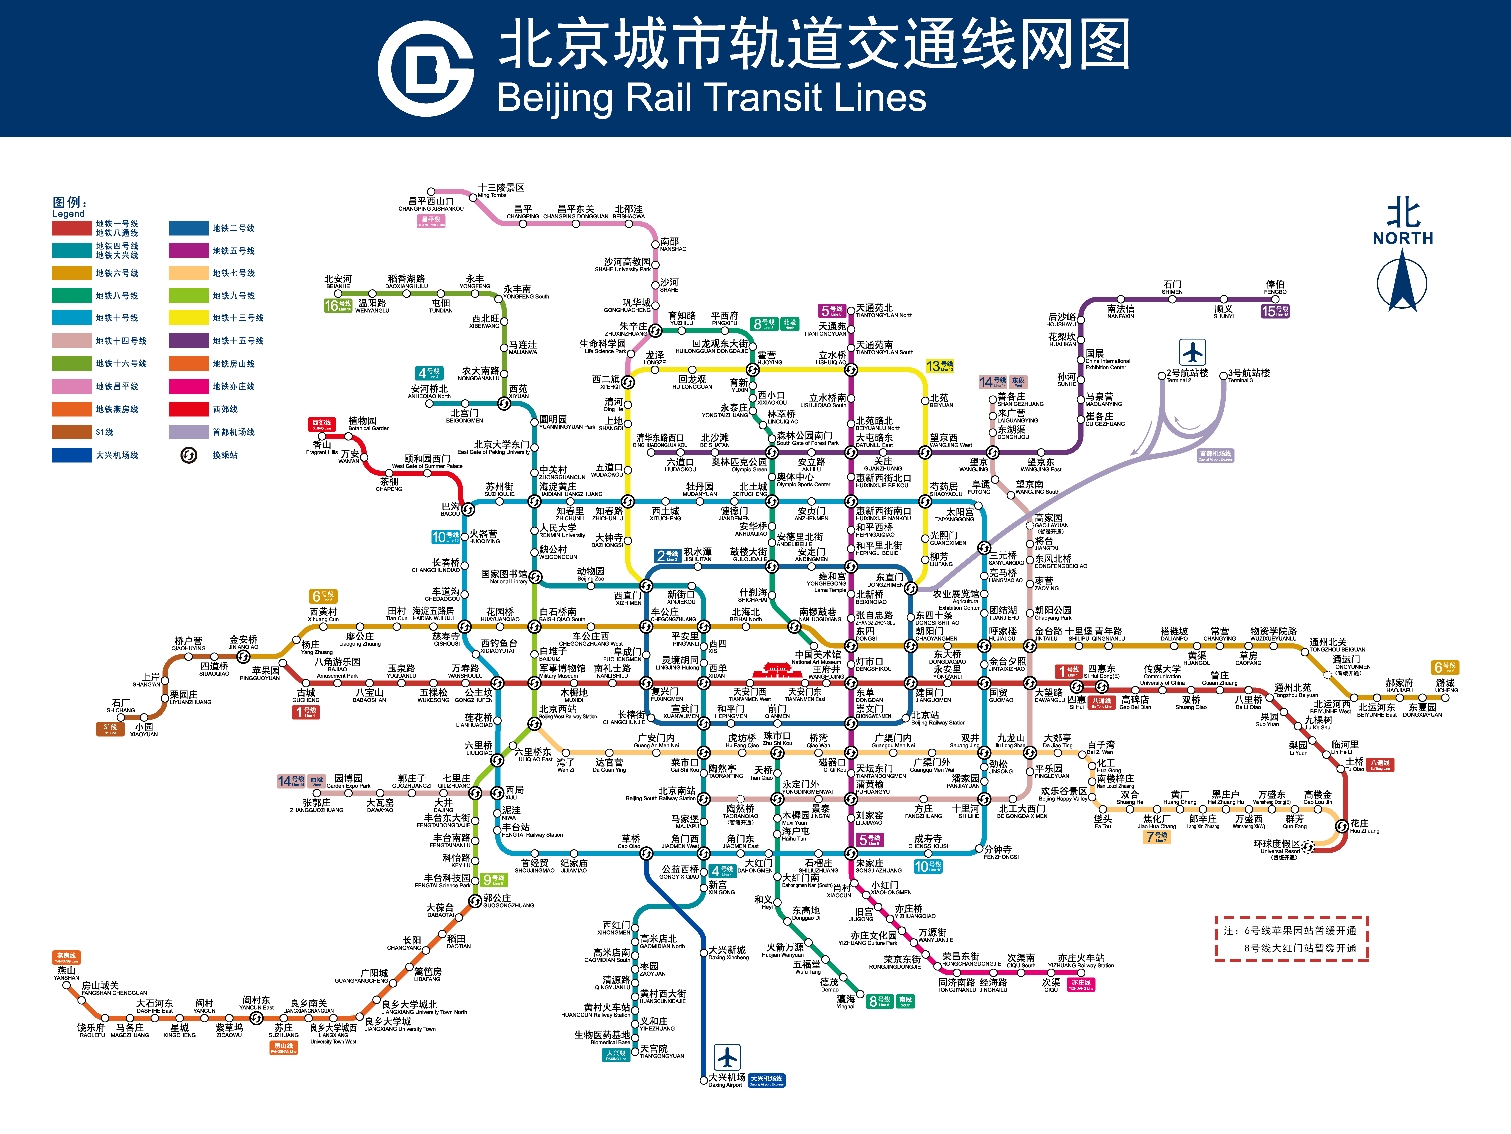 北京地铁四号线是哪个地铁公司所管理的? a.北京地铁一分公司 b.